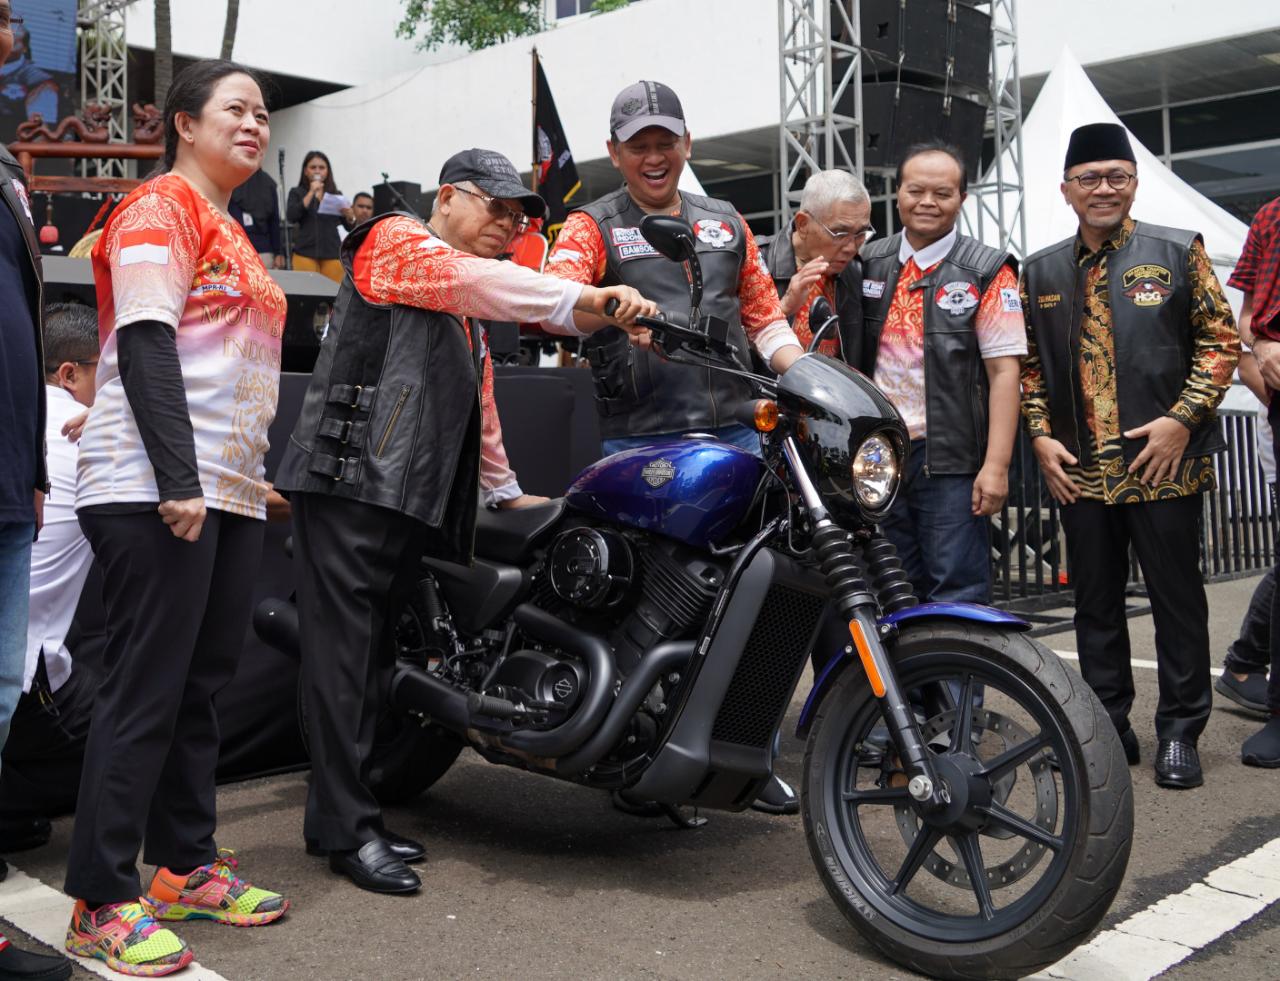 Wakil Presiden (Wapres) Ma'ruf Amin meresmikan lomba cerdas cermat Kebangsaan 4 Pilar MPR RI bagi pemotor (bikers). Acara ditandai dengan menstater motor gede. (Foto: Setwapres)